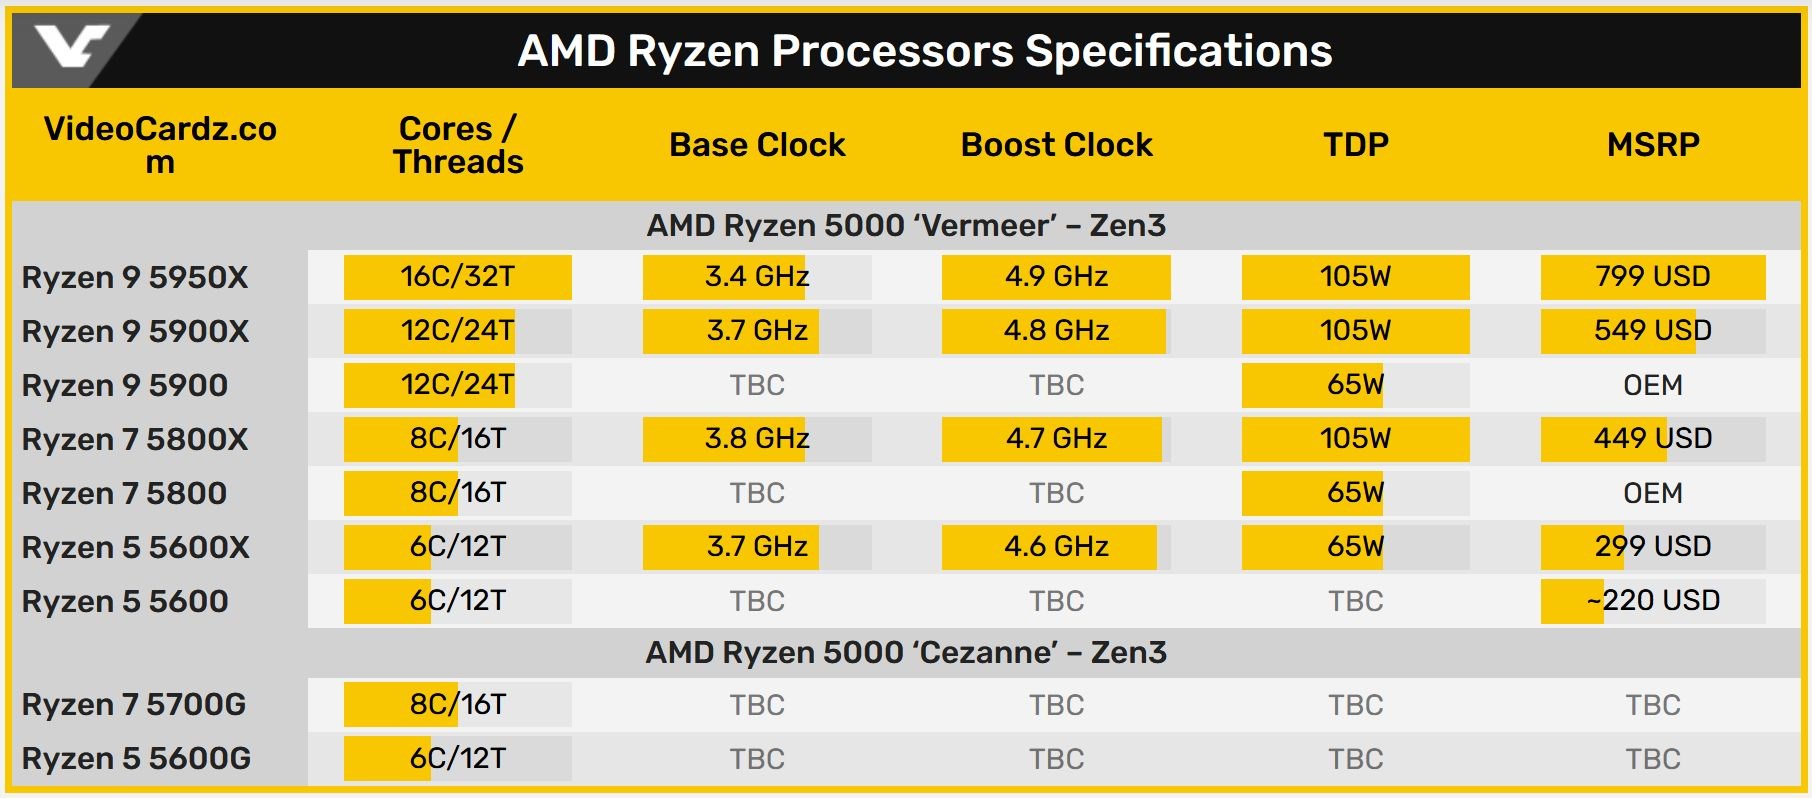 Amd ryzen 5600 6 core processor. Ryzen 7 5700g. Ryzen 7 5700 g таблица. Разгон Ryzen 7 5700g. Ryzen 5600g.